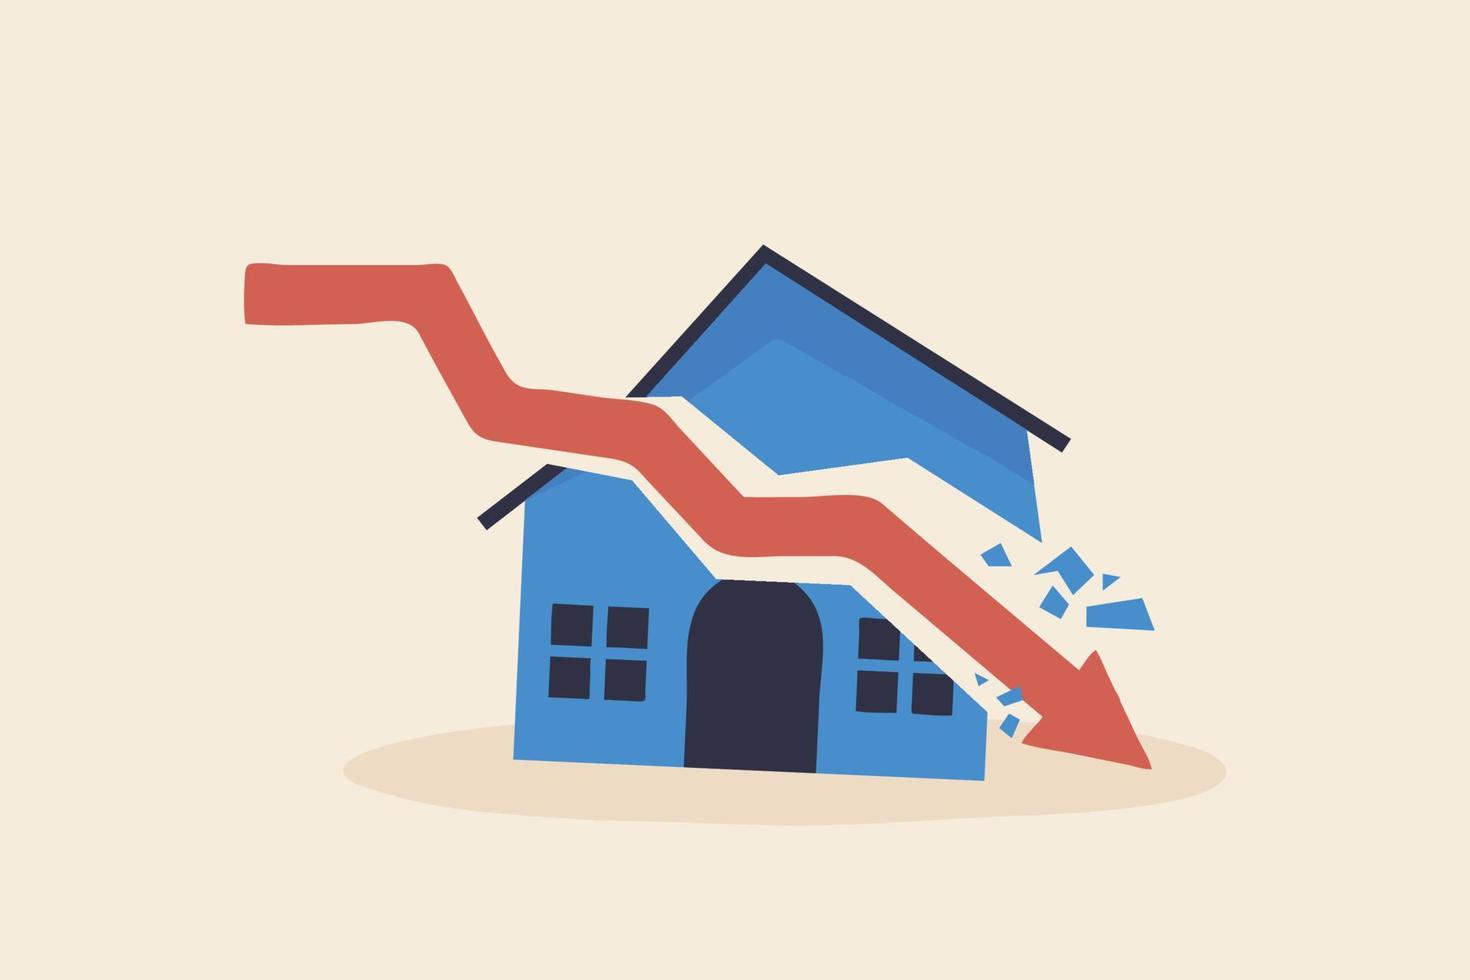 crisis inmobiliaria, deuda inmobiliaria o caída de los precios inmobiliarios. el concepto de bienes raíces de bajo costo. gráfico de flecha golpeando la casa. vector